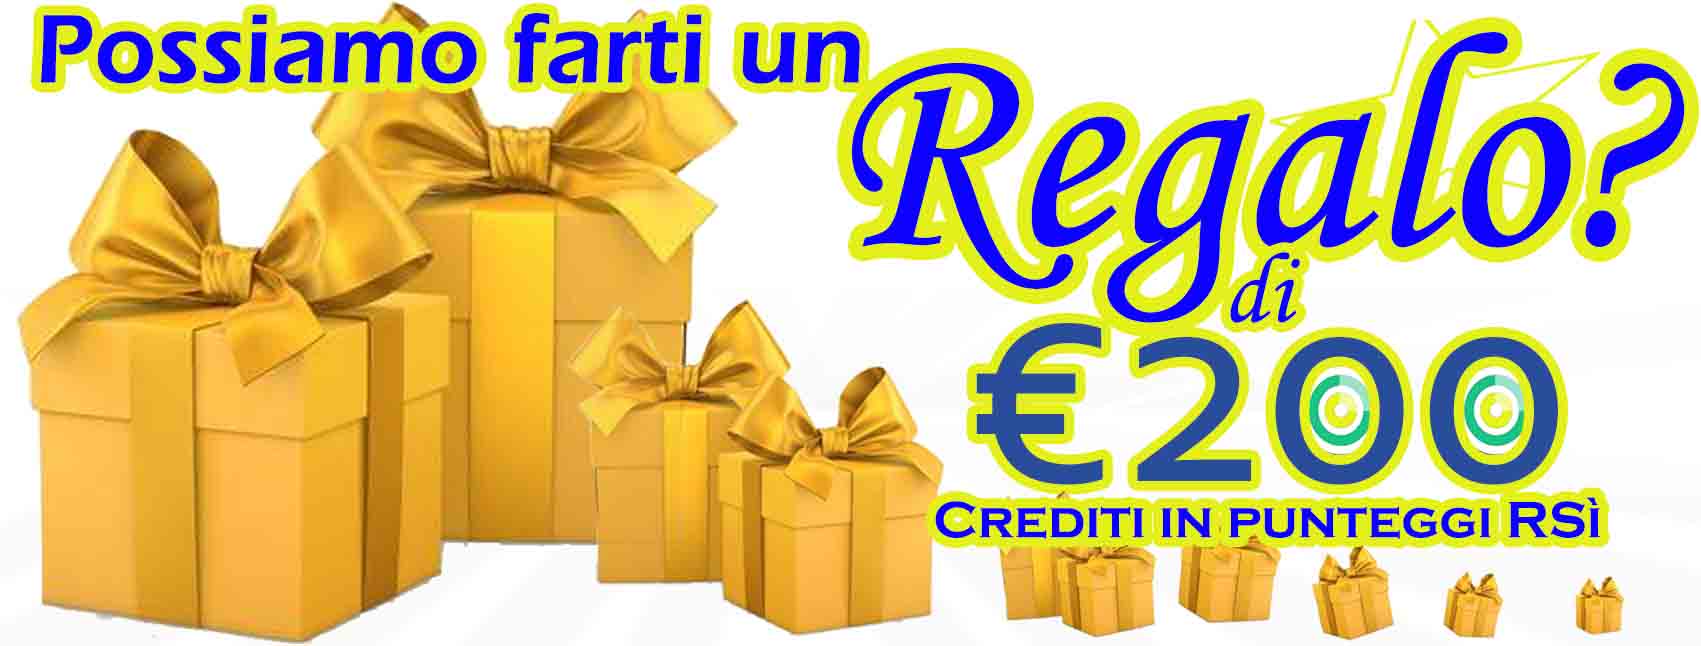 Proprio cosi! Registrati, segui le indicazioni e aggiudicati 200euro in crediti RivieraSì, utilizzabili per dare visibilità ai tuoi annunci gratis!